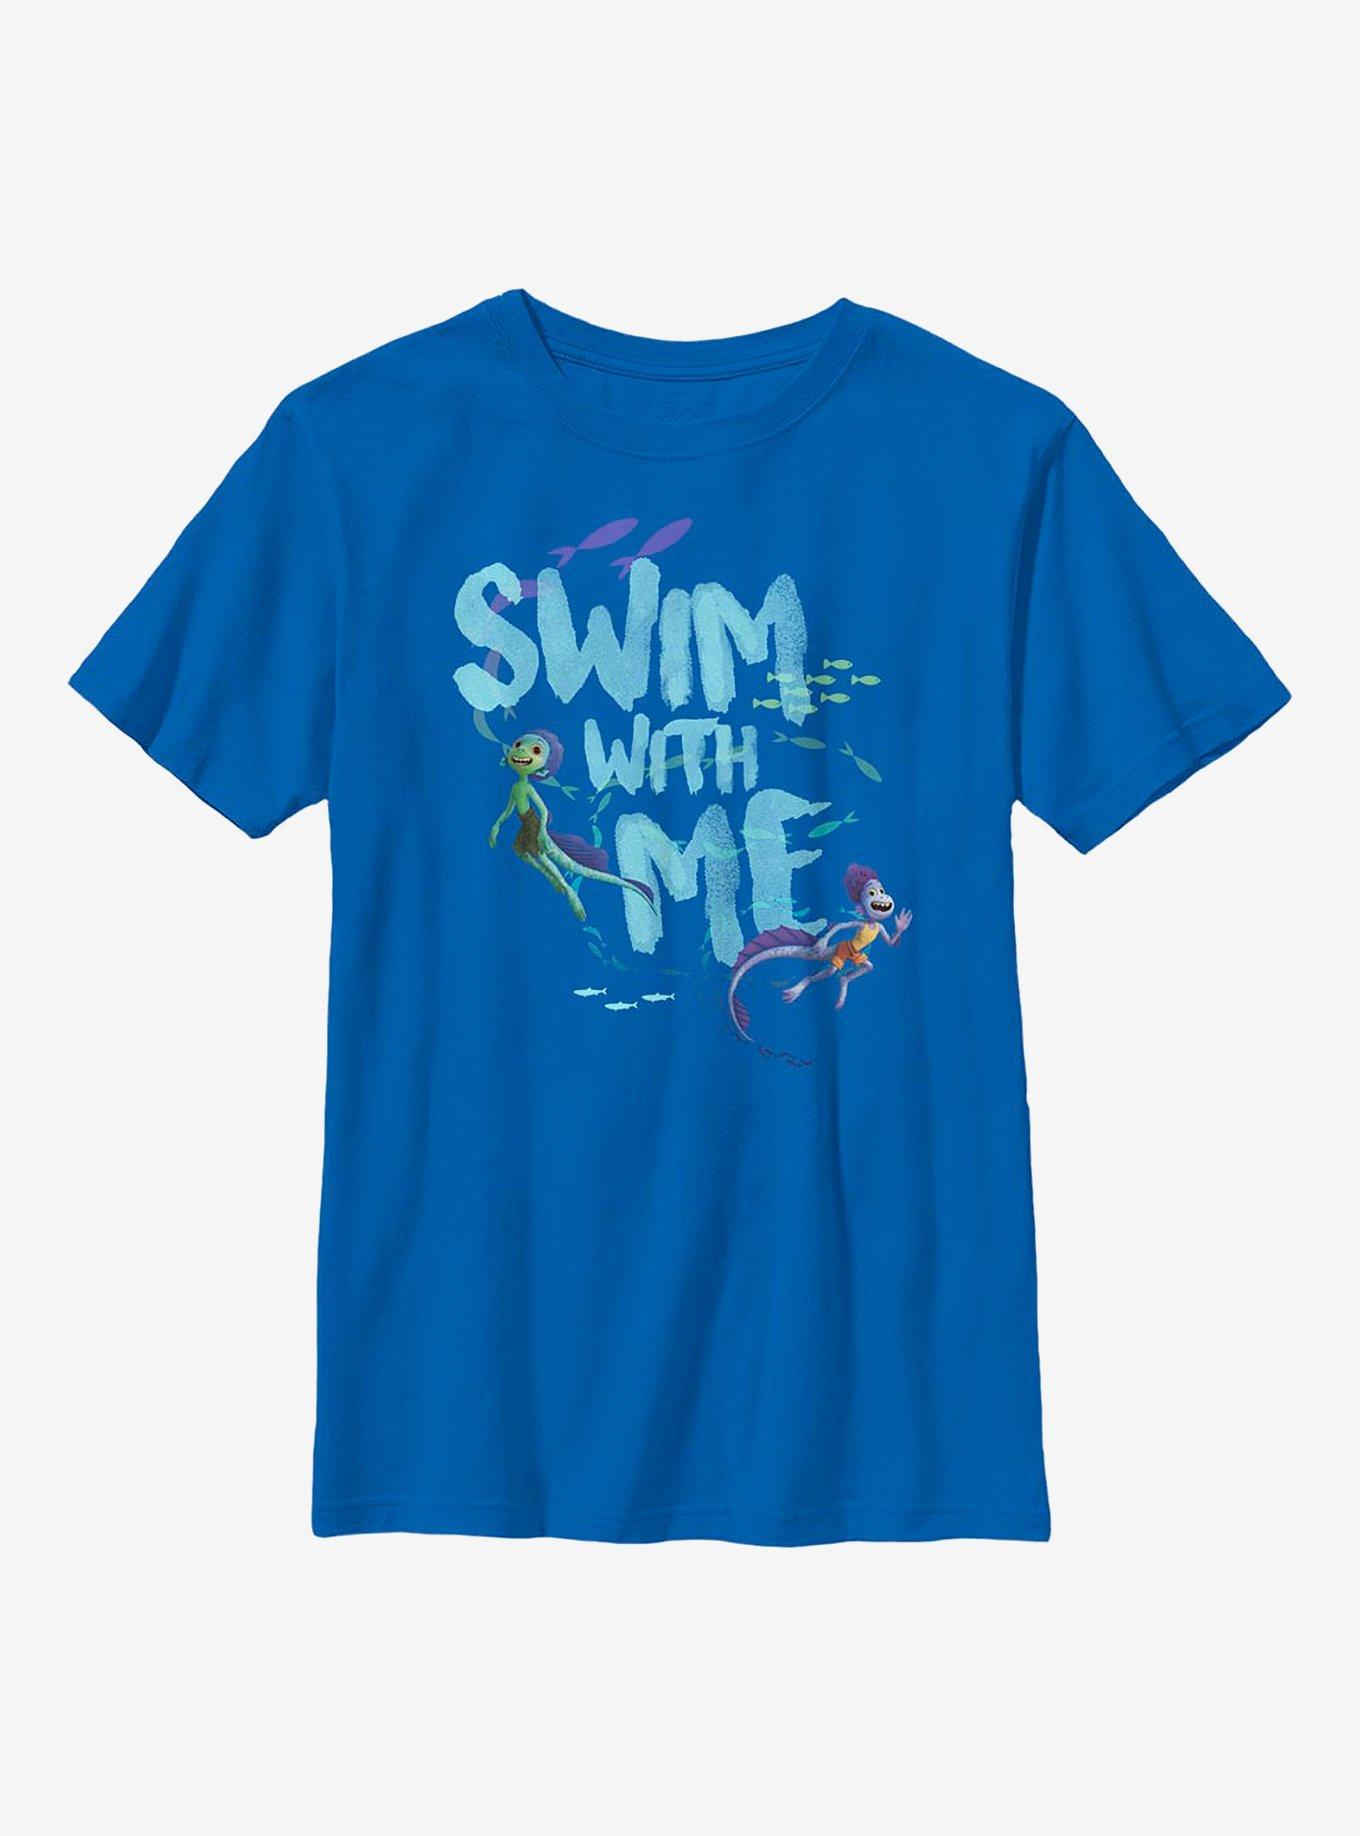 Disney Pixar Luca Swim With Me Youth T-Shirt, ROYAL, hi-res